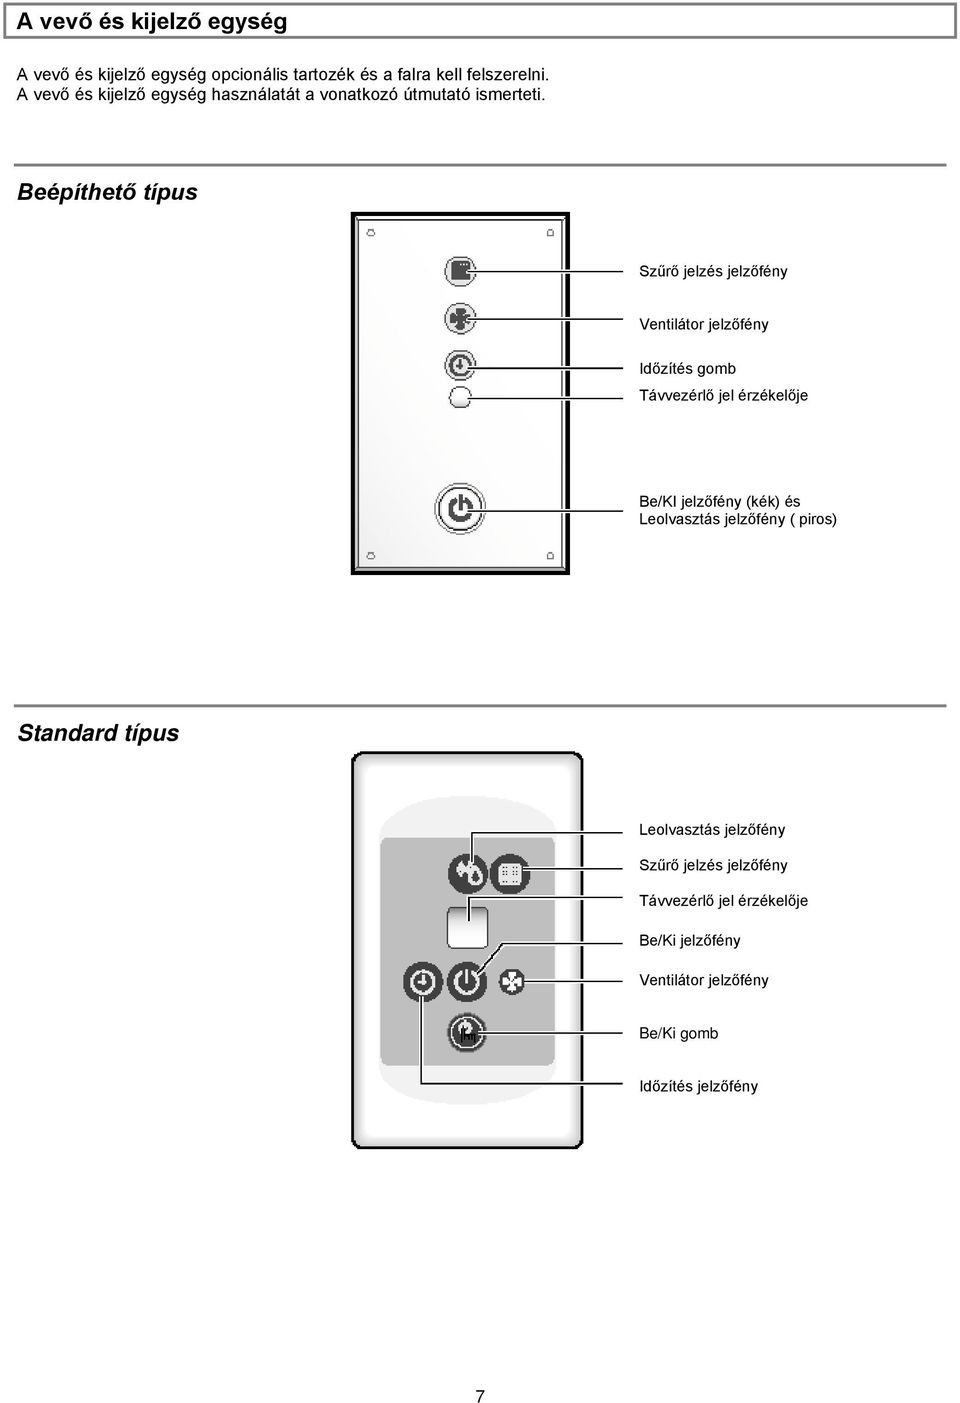 Beépíthető típus Szűrő jelzés jelzőfény Ventilátor jelzőfény Időzítés gomb Távvezérlő jel érzékelője Be/KI jelzőfény